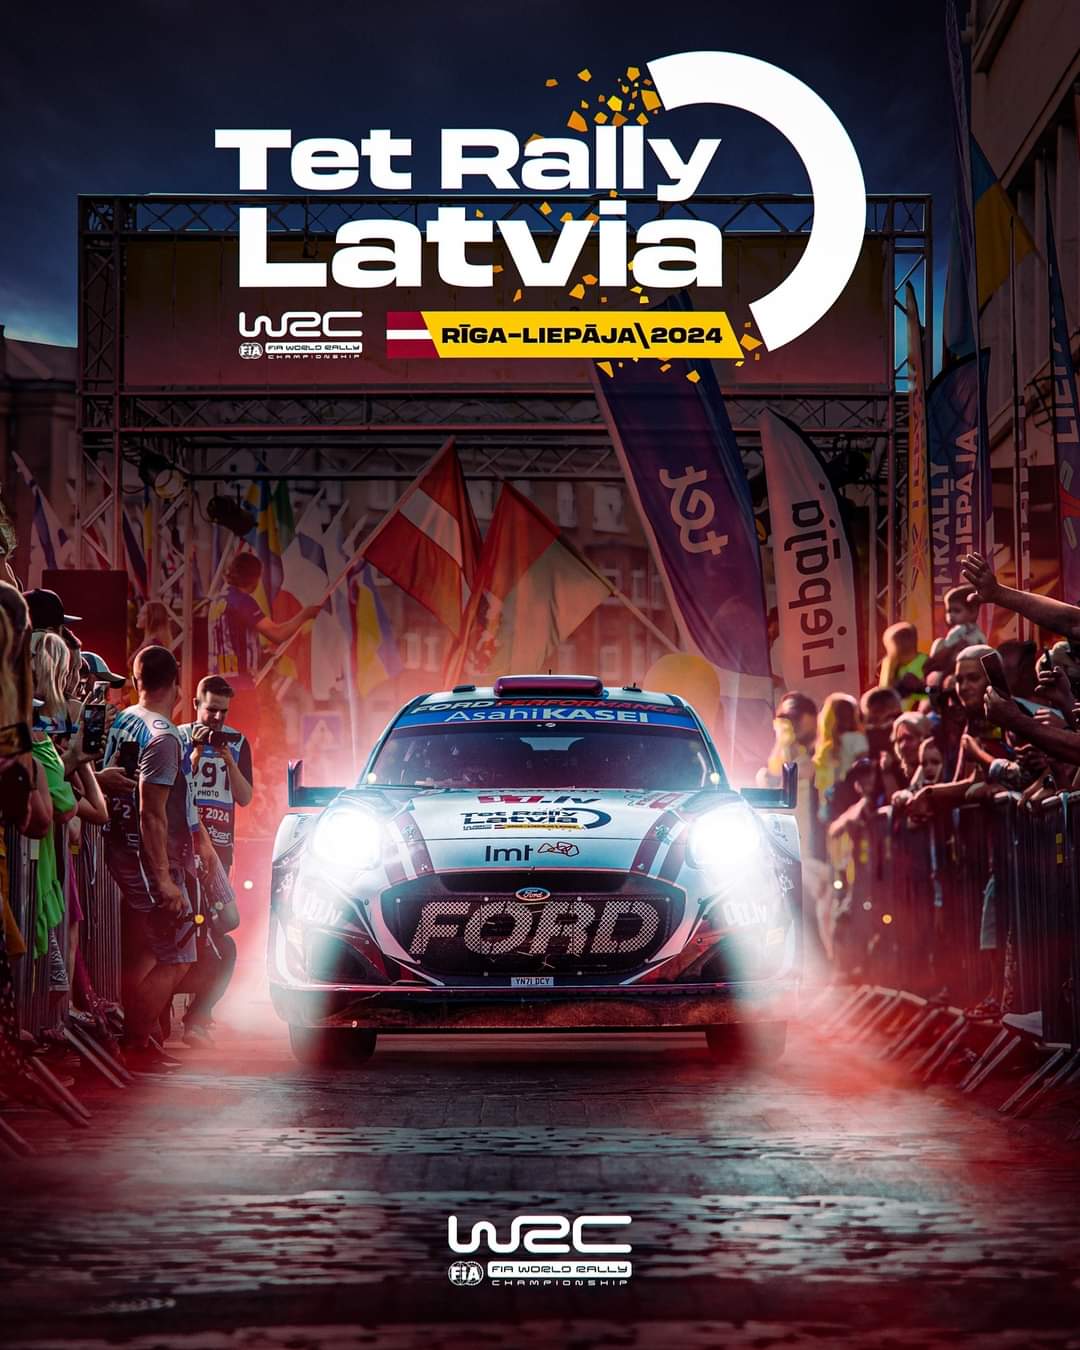 Holnap kezdődik a WRC Lett rally